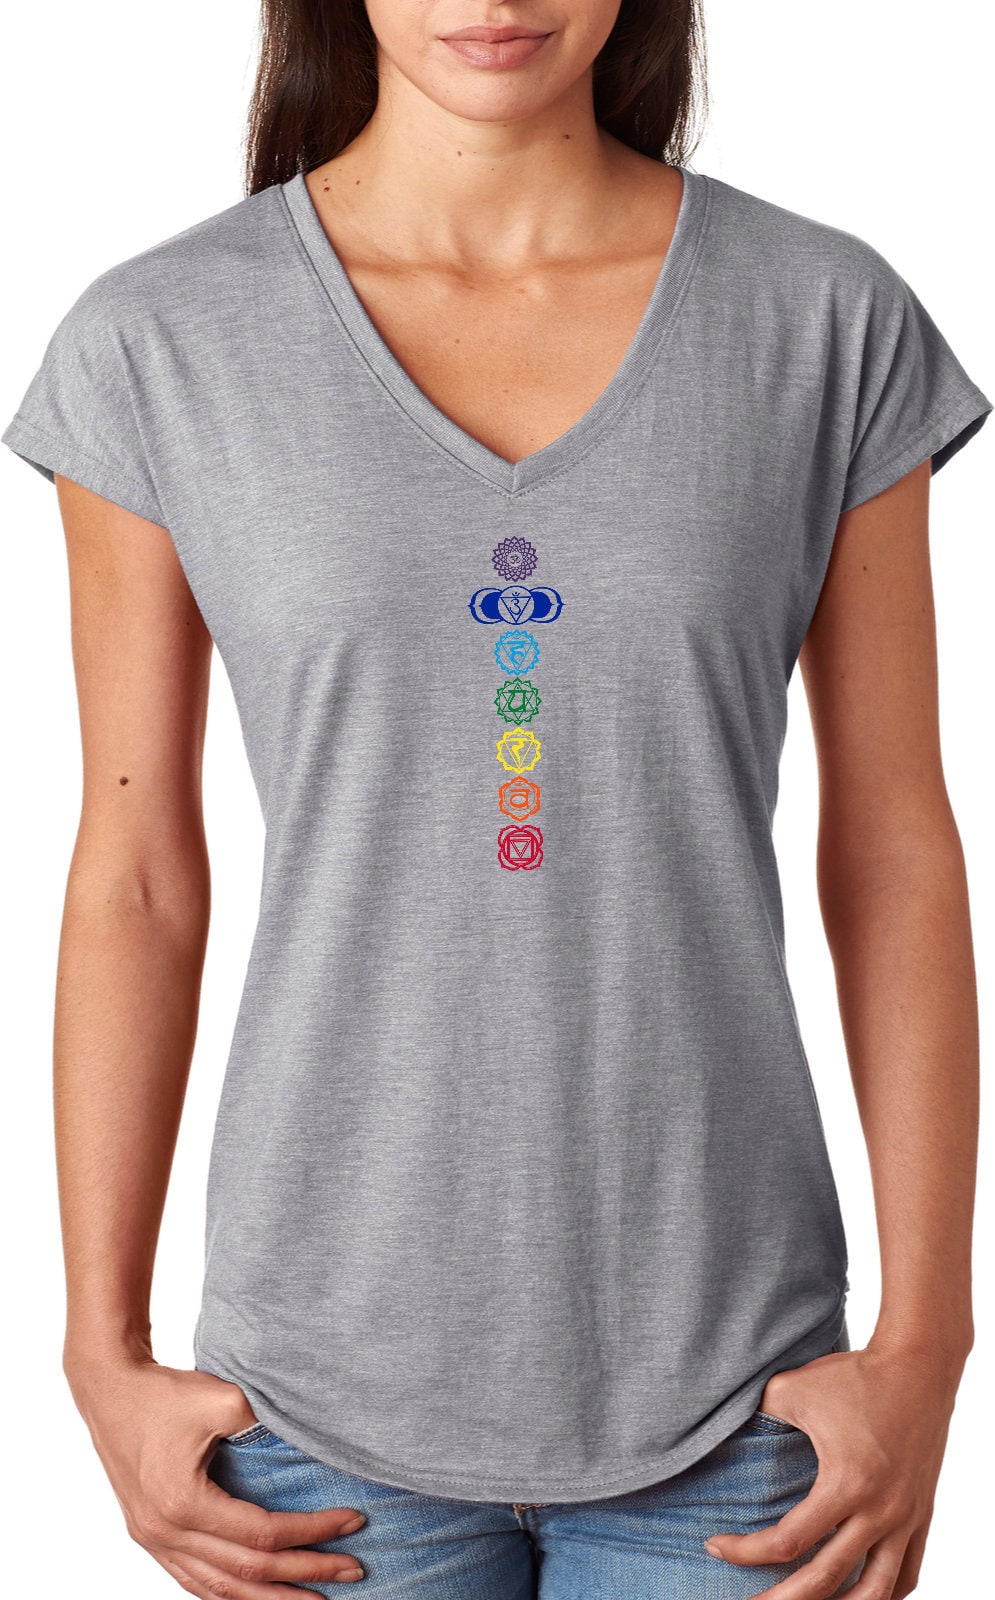 Colored Chakras Ladies Yoga Tri Blend V-Neck Tee Shirt = Colored-6750Vl